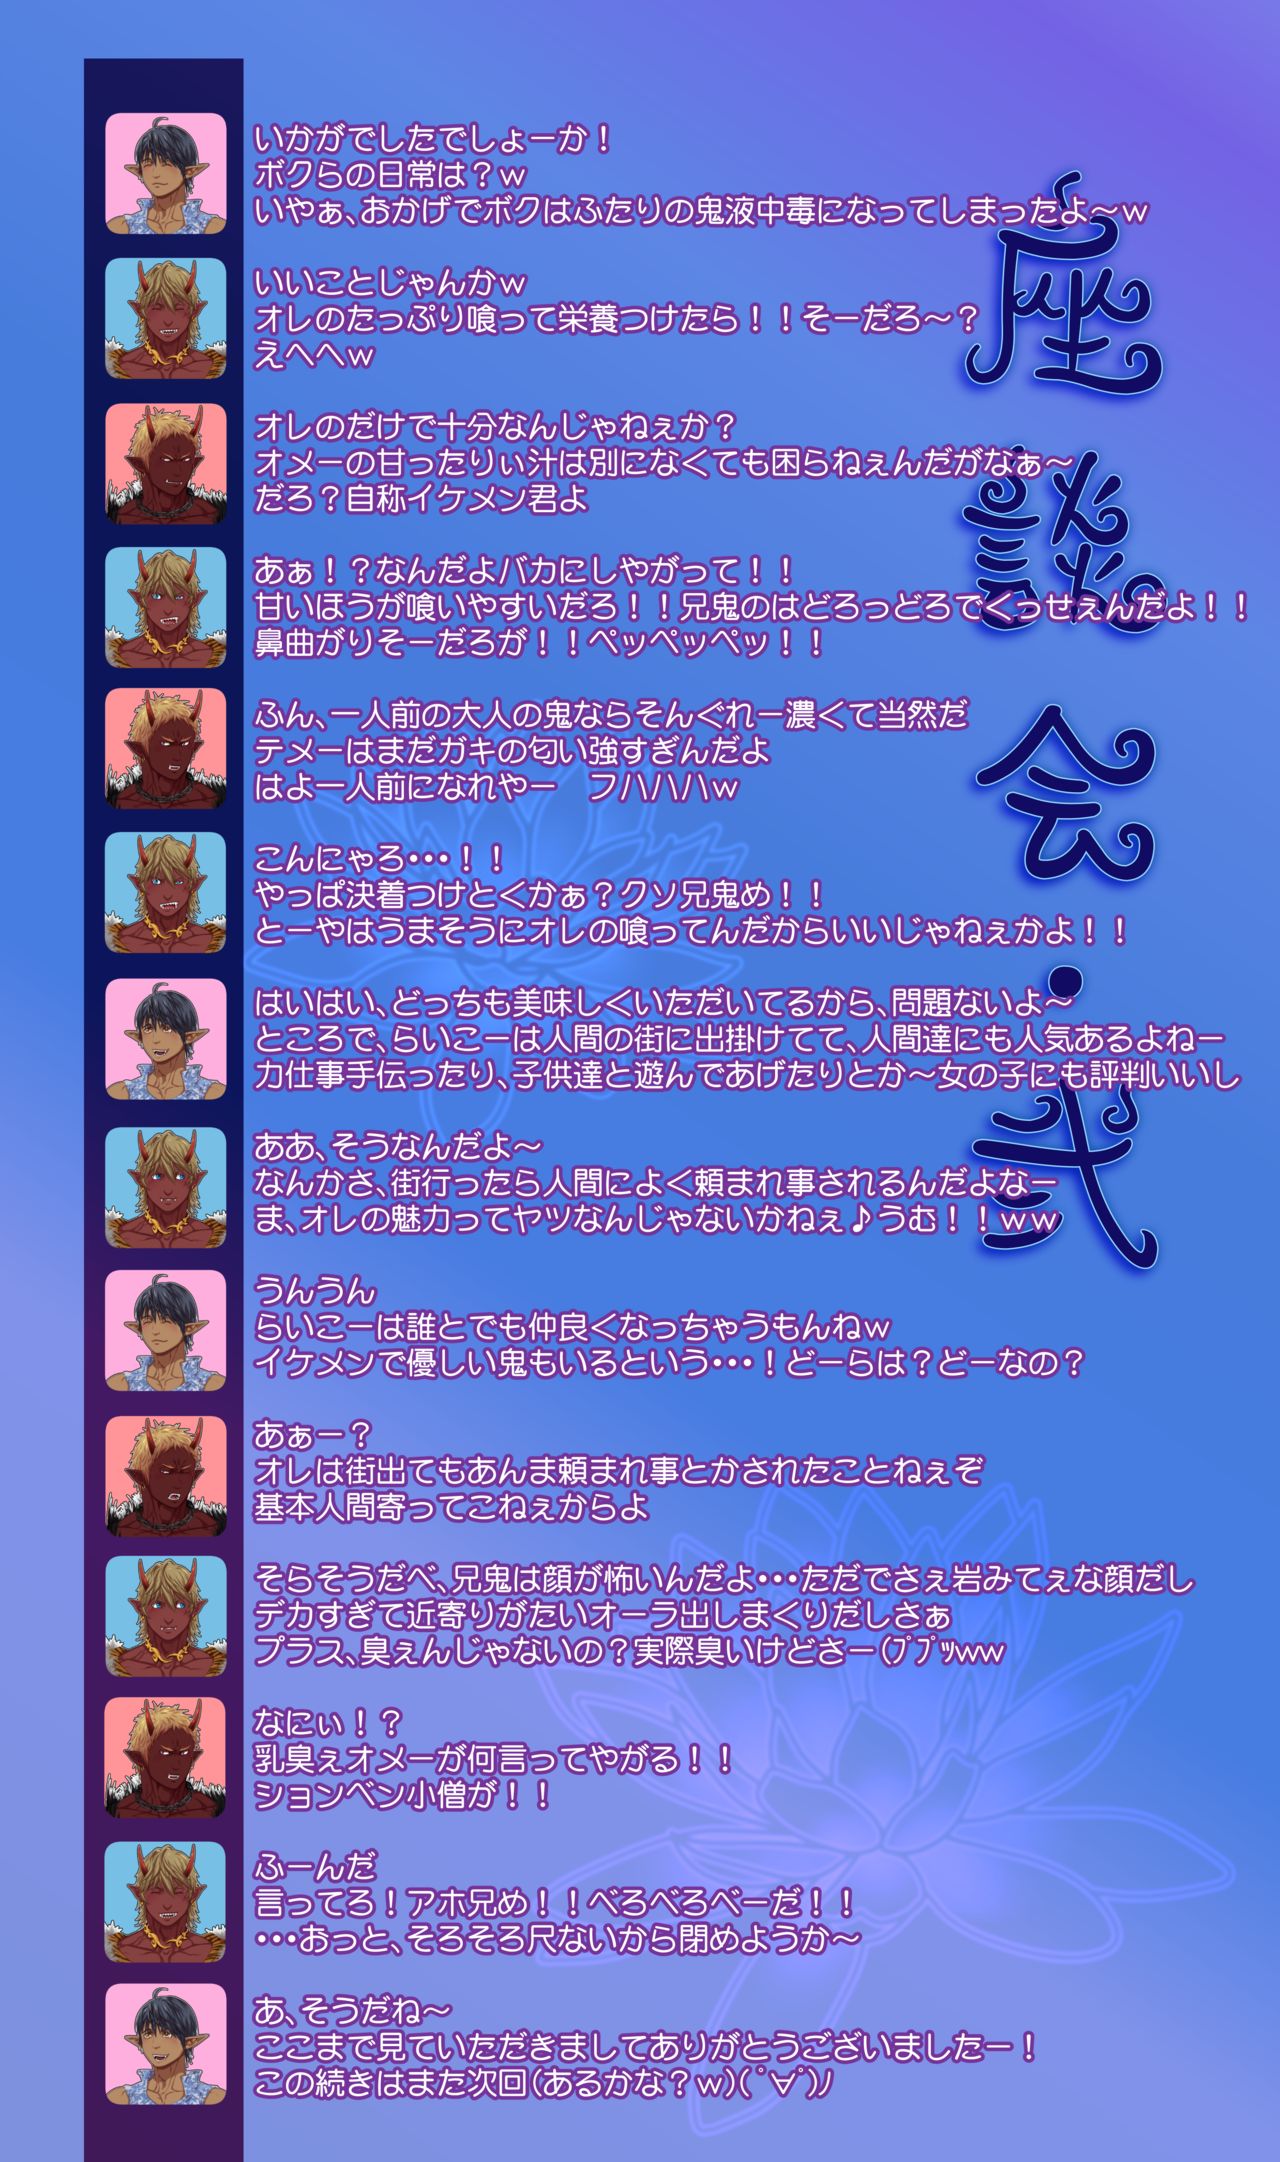 Keisuke Enlightes Syndicate KES Oni-kai Shakudou Niku-ki 鬼界・赤銅肉記